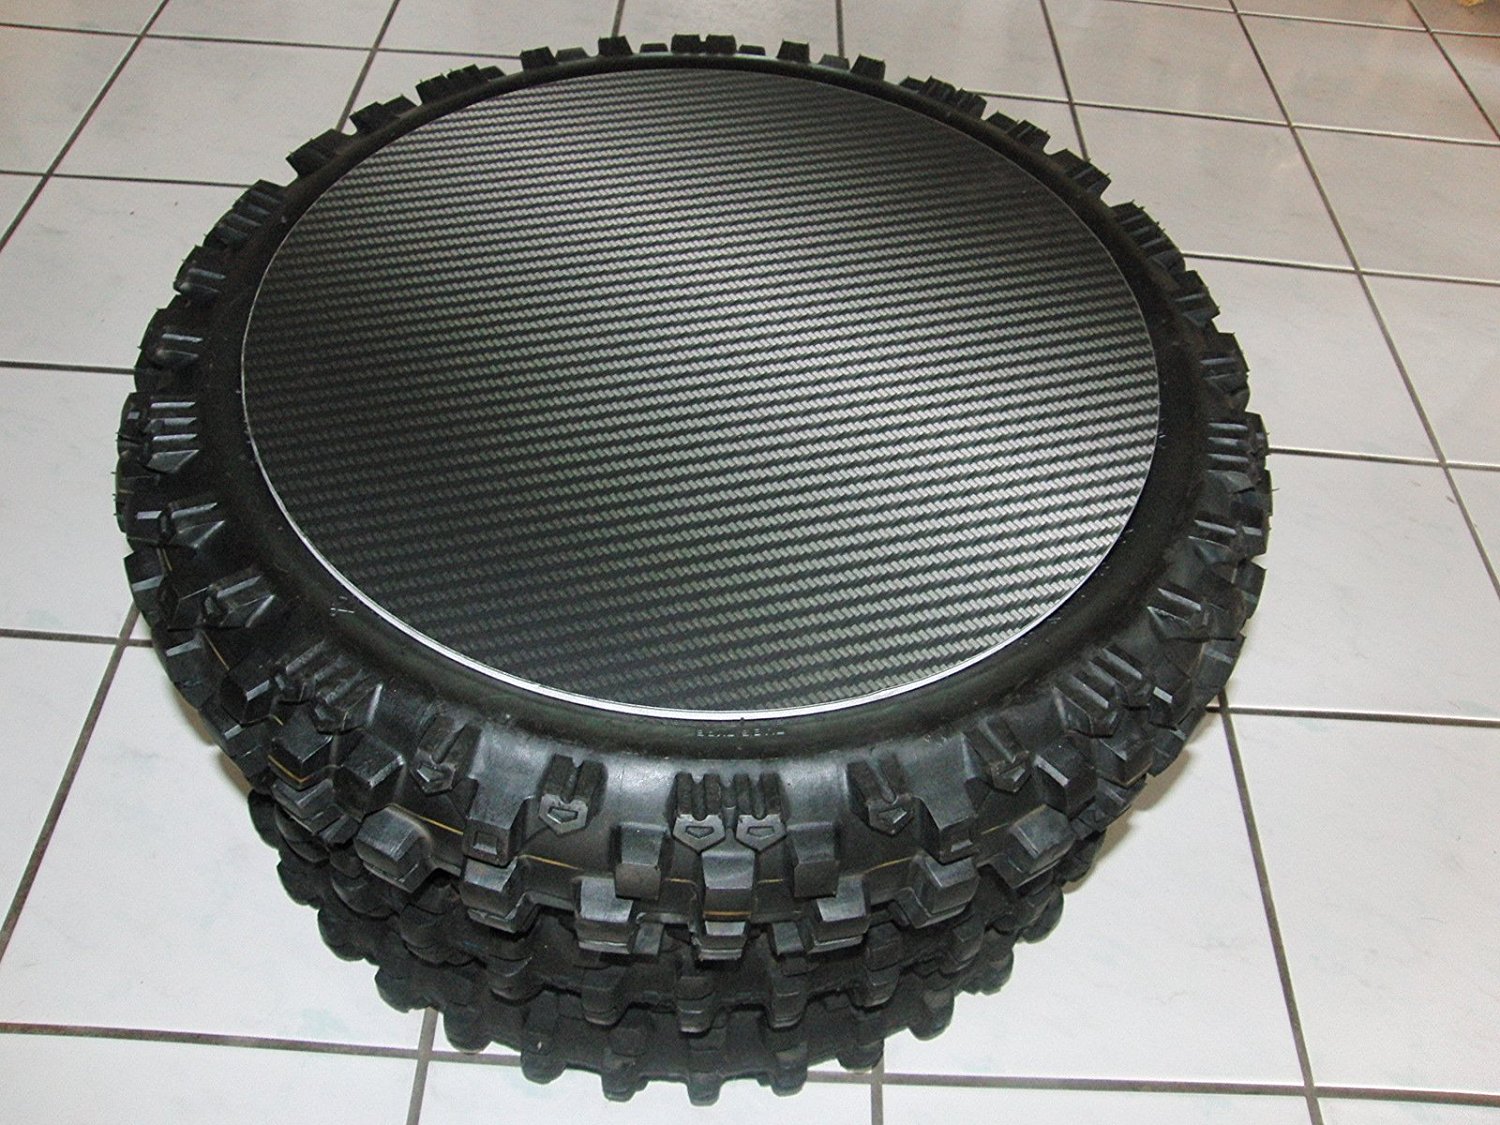 Tisch "Racing-Carbonoptik" aus MX Reifen